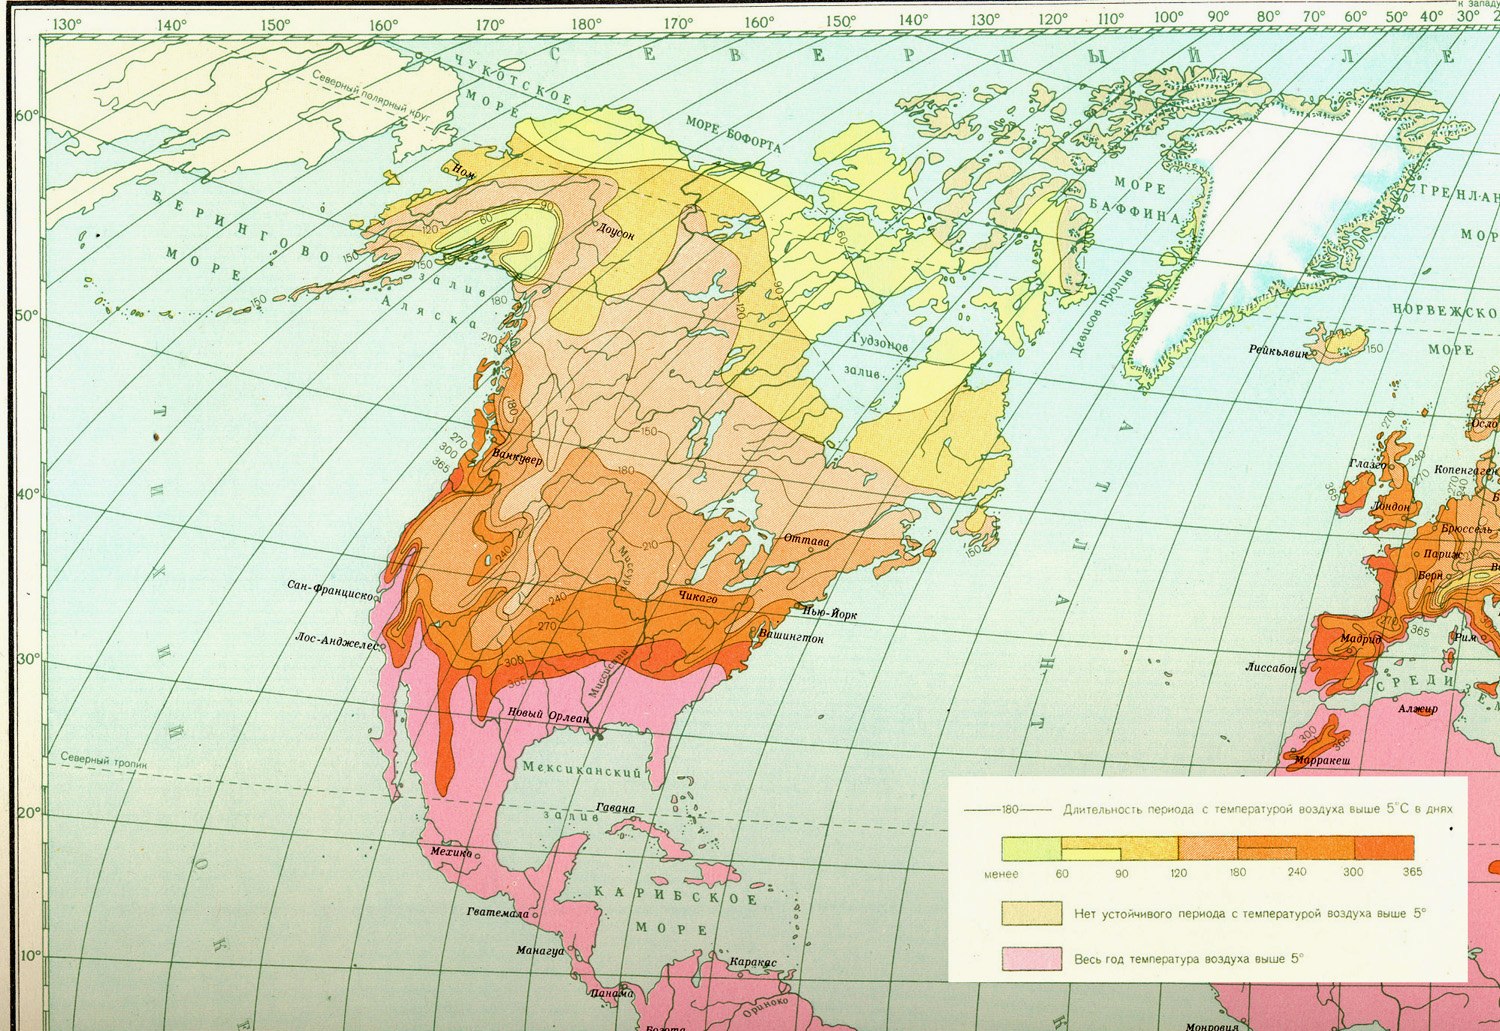 Какой пояс занимает большую часть северной америки. Климатическая карта Северной Америки. Карта климатических поясов Северной Америки. Карта среднегодовых температур Северной Америки. Климат карта Сев Америки.